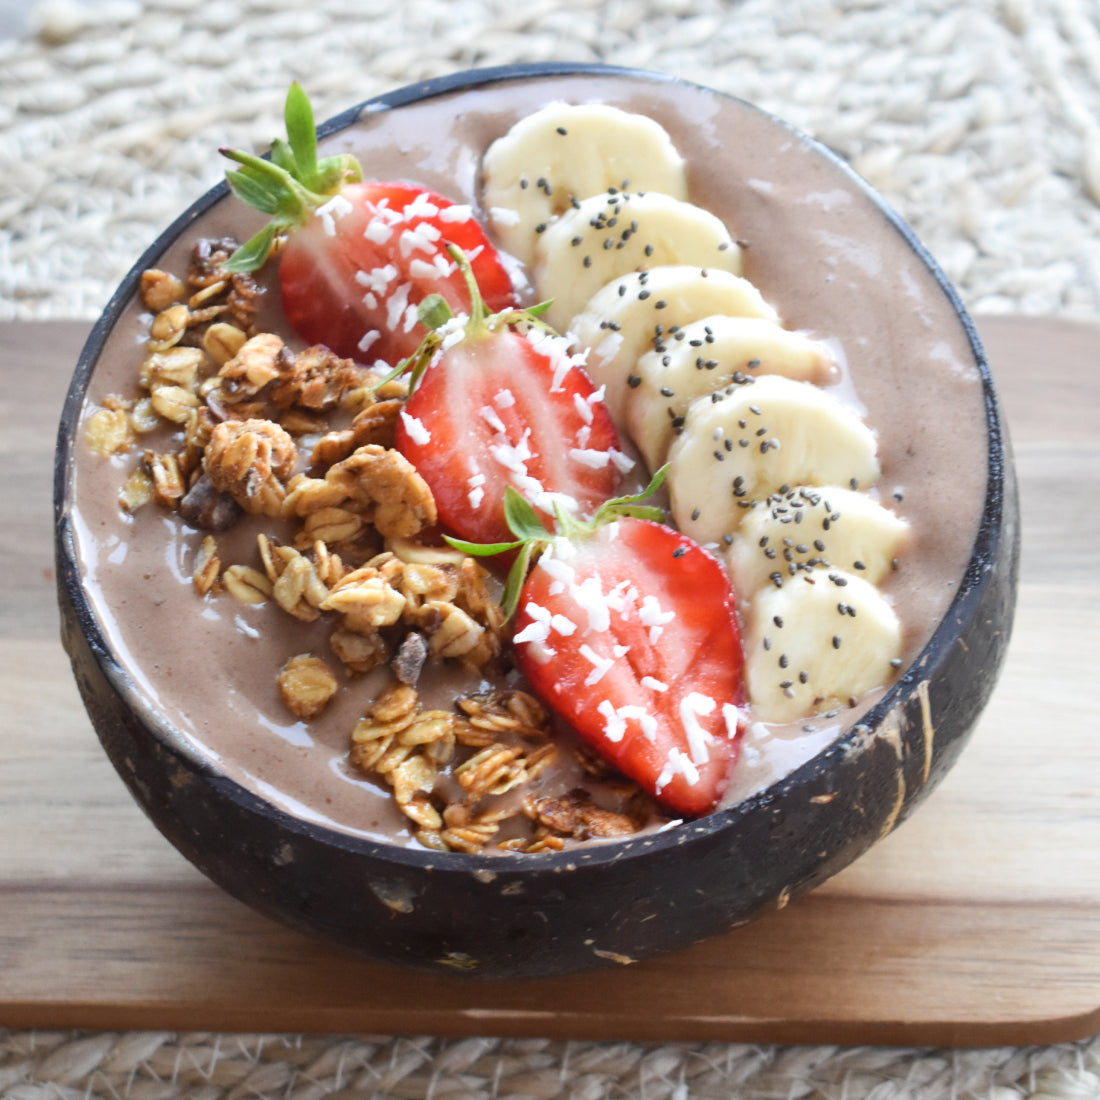 Börja din dag smart med KIANOs hjärnboostande magiska svampchoklad i frukostskålen